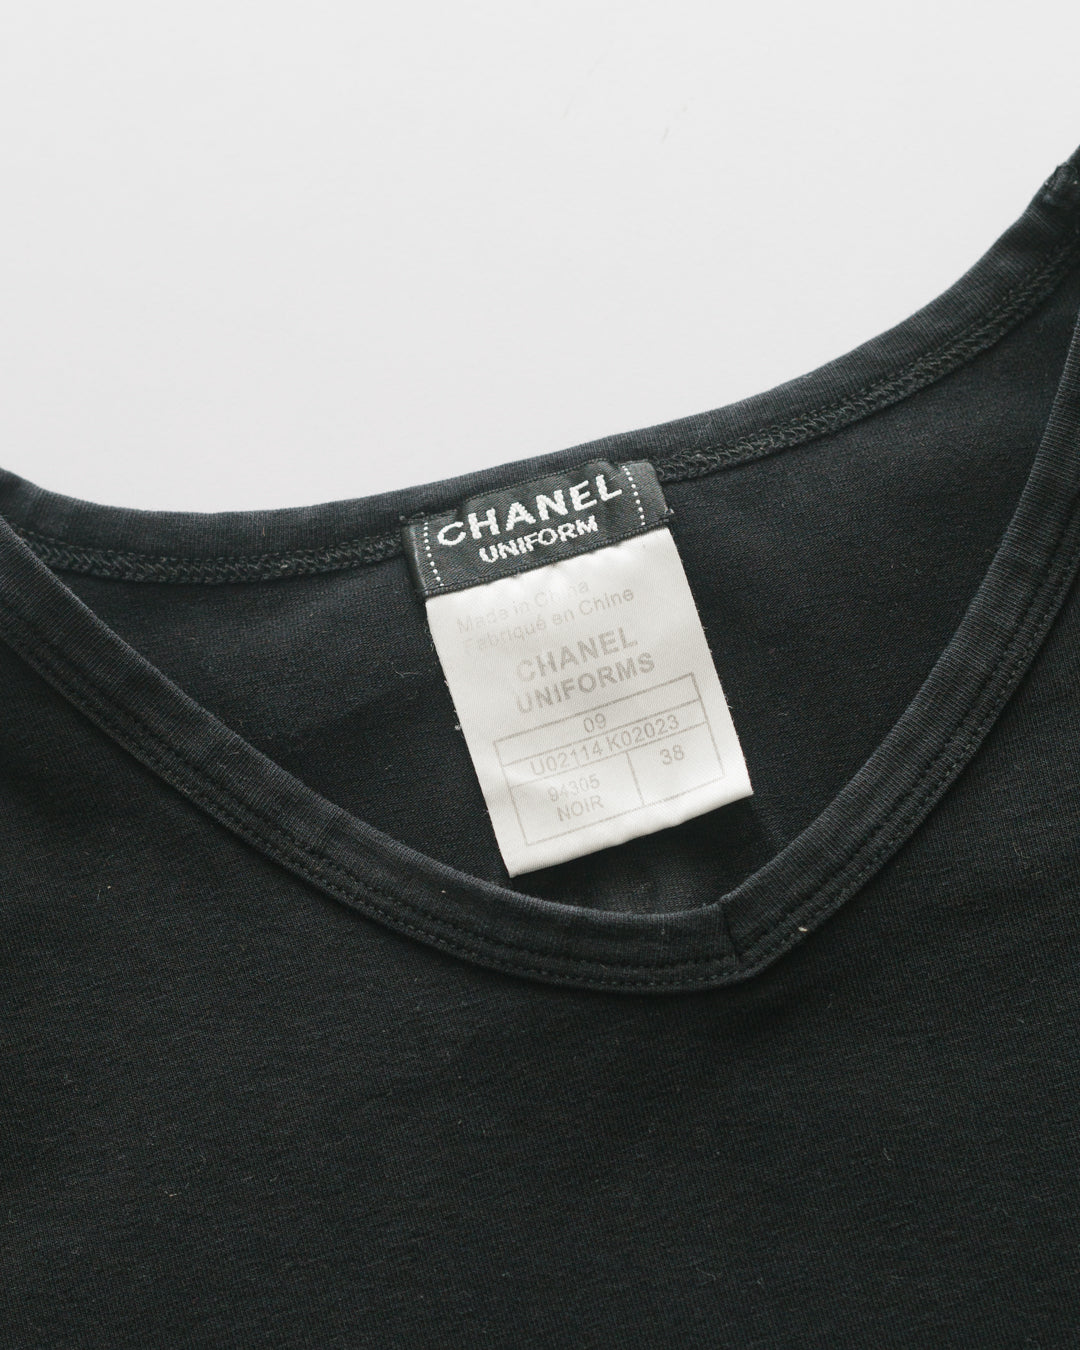 Chanel Uniforms Back CC Logo Tshirt